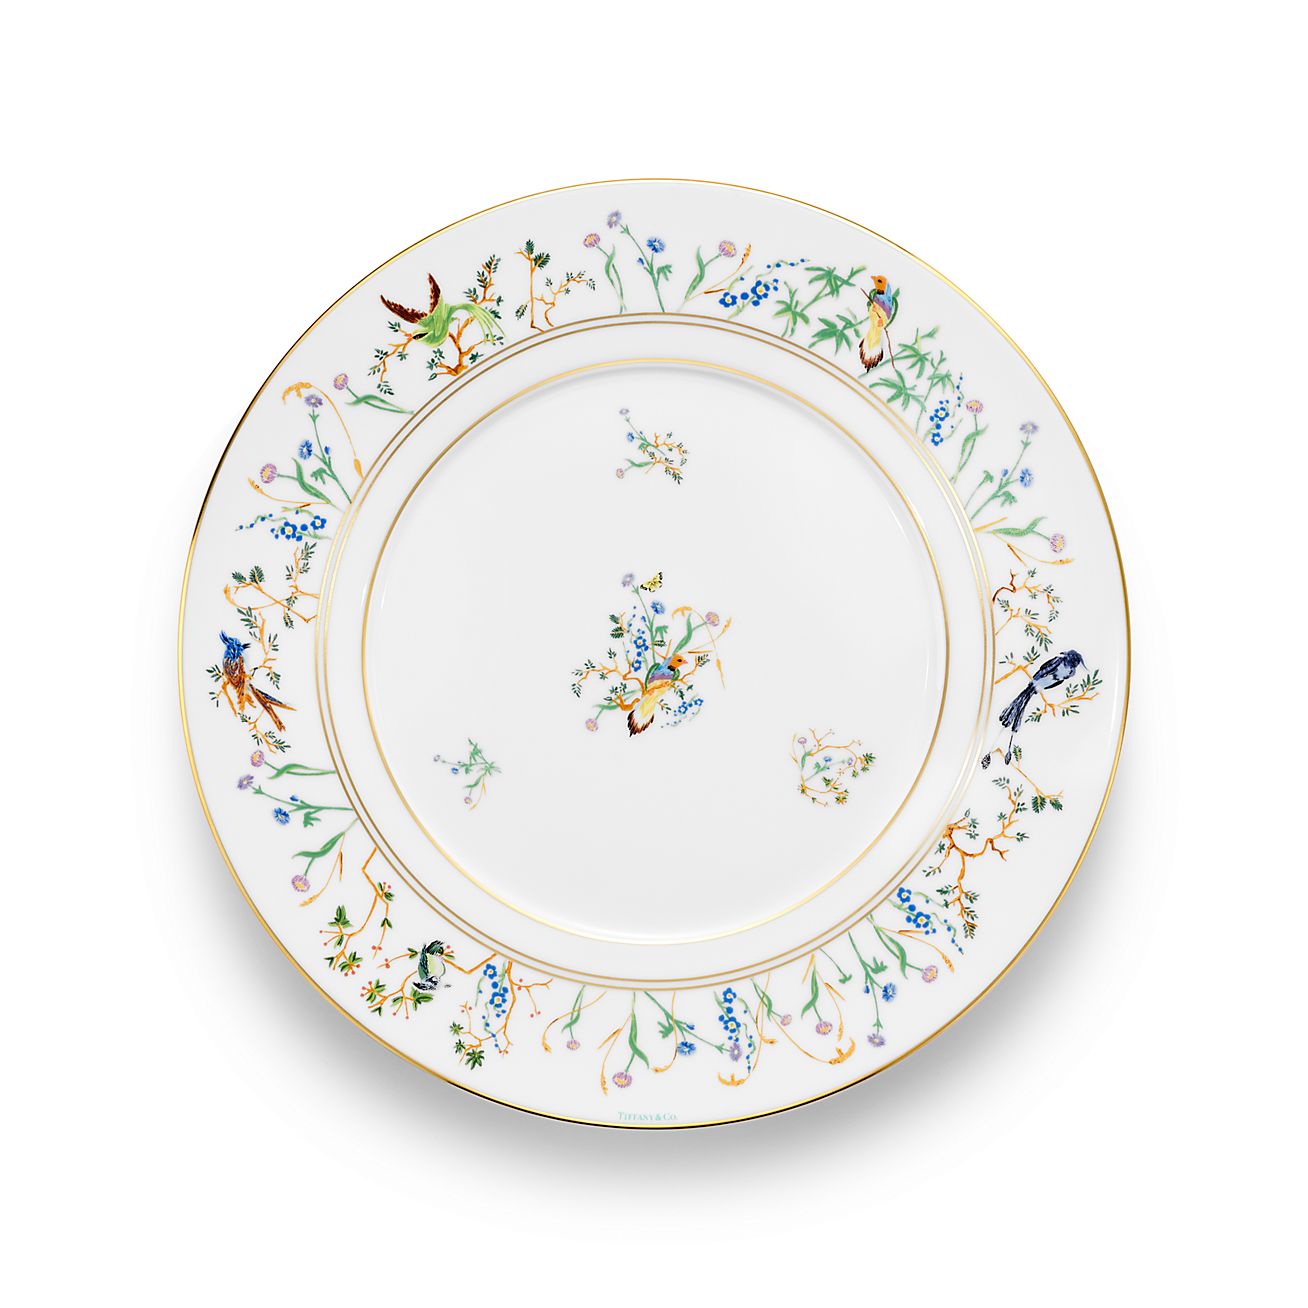 Tiffany Jardin Dinner Plate in Porcelain | Tiffany u0026 Co.